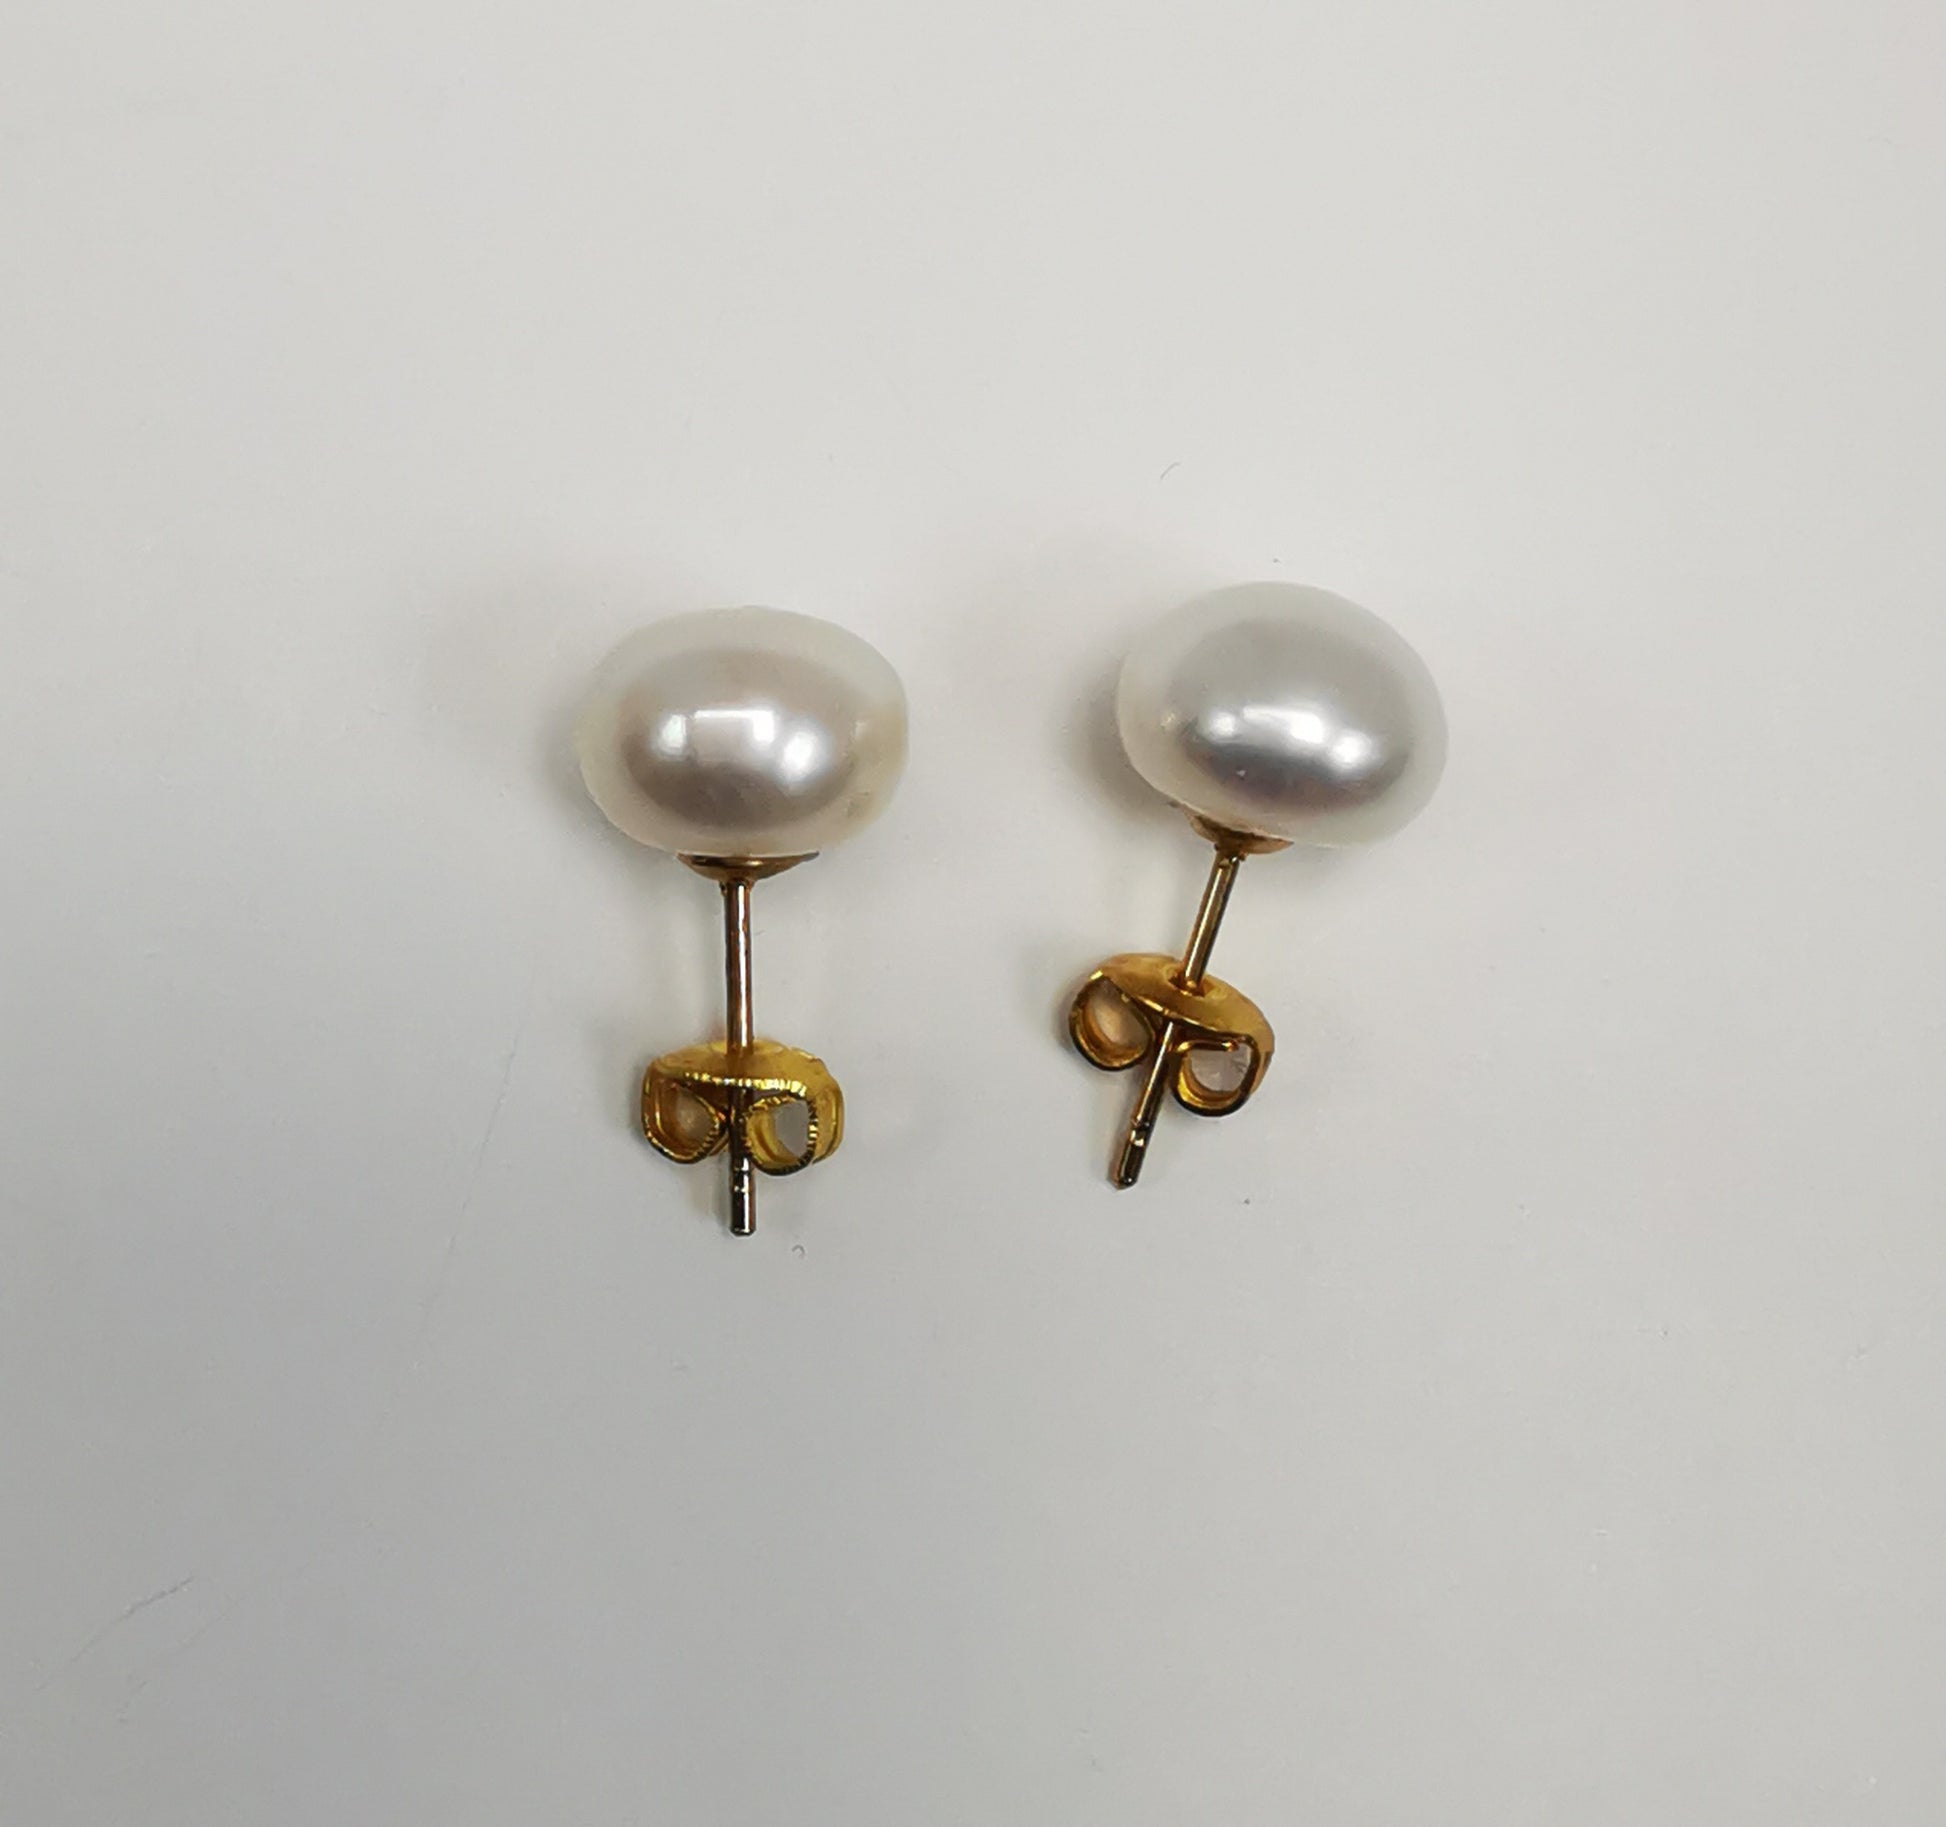 Boucles d'oreilles perles de culture blanches 9mm montées sur clous plaqués or. Présentées cote à cote, perles en haut, posées sur un fond blanc. Vue de dessus.